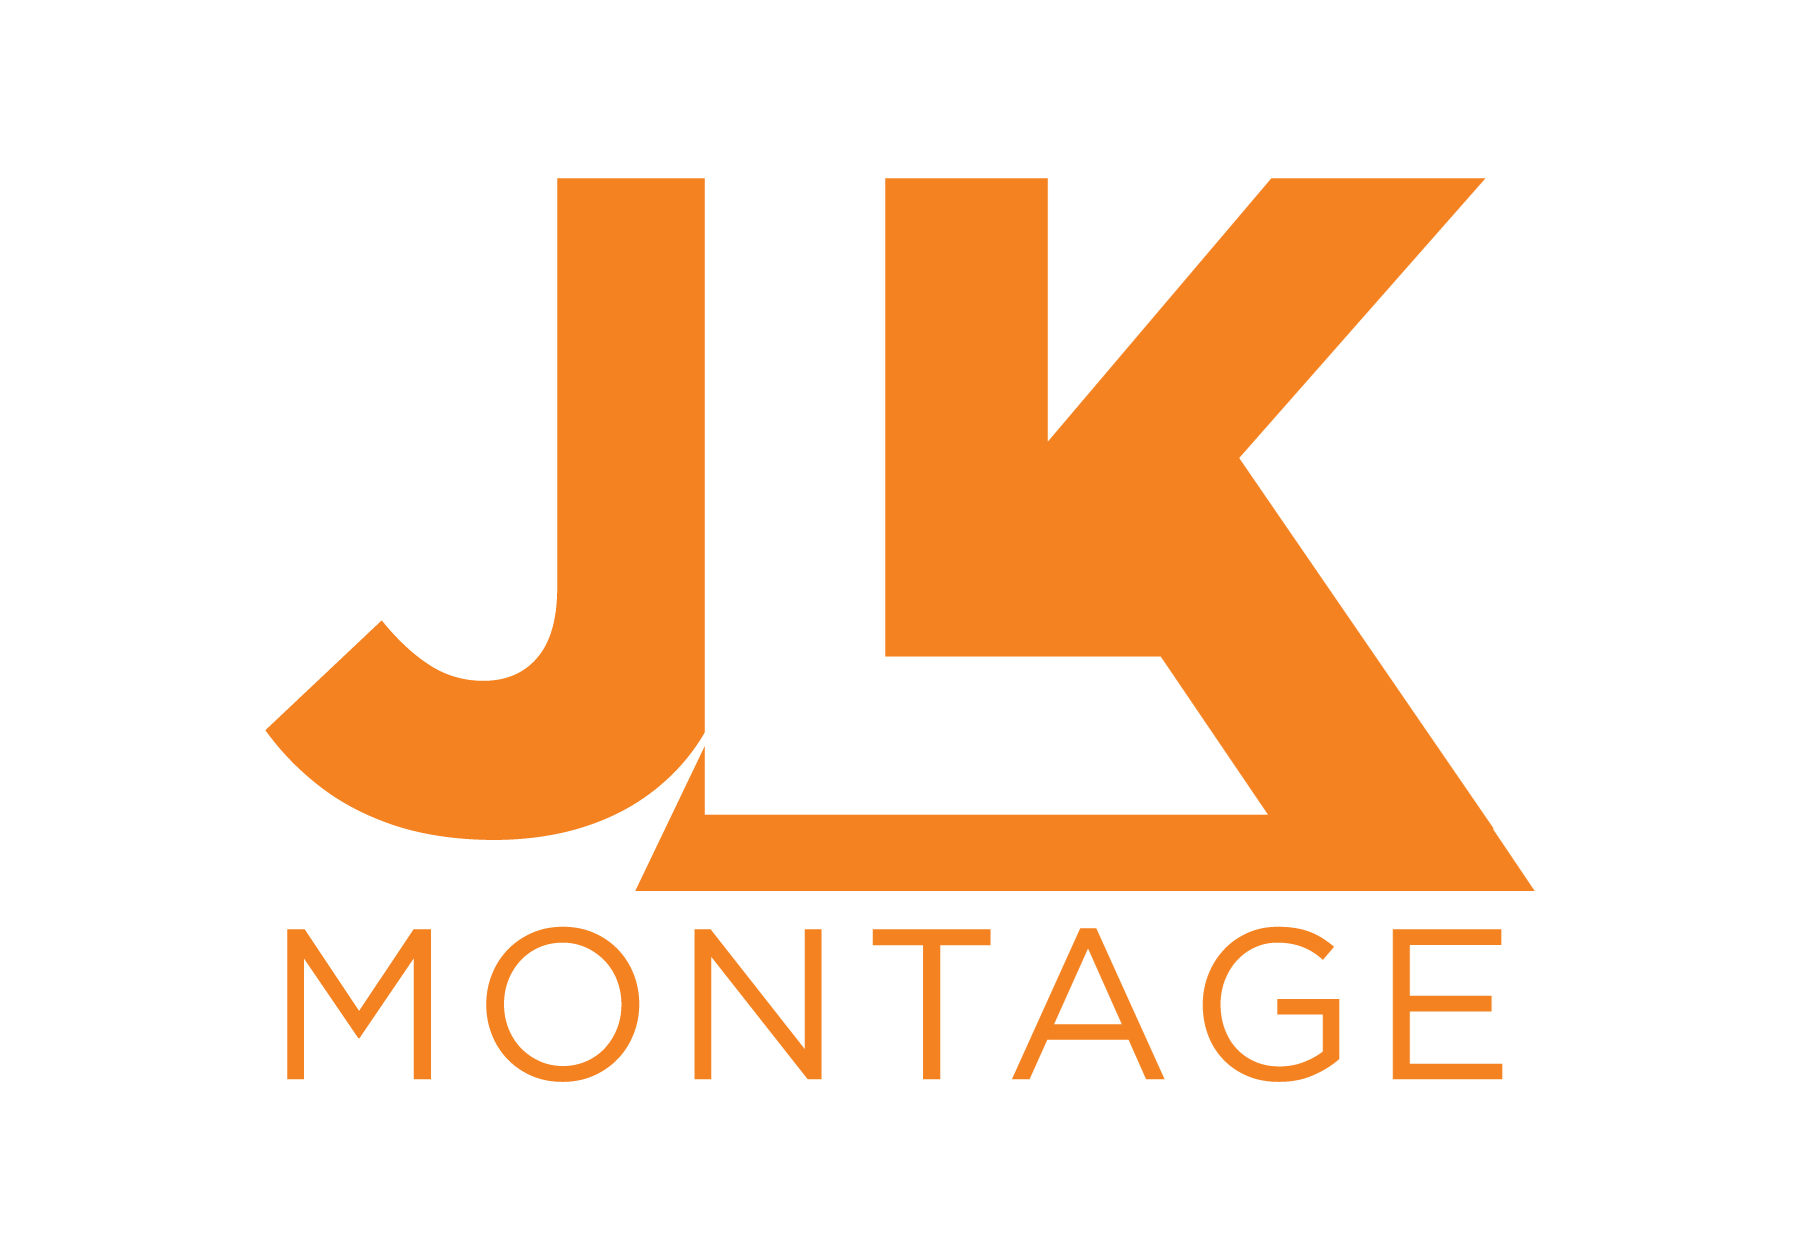 jlk-montage_final_300